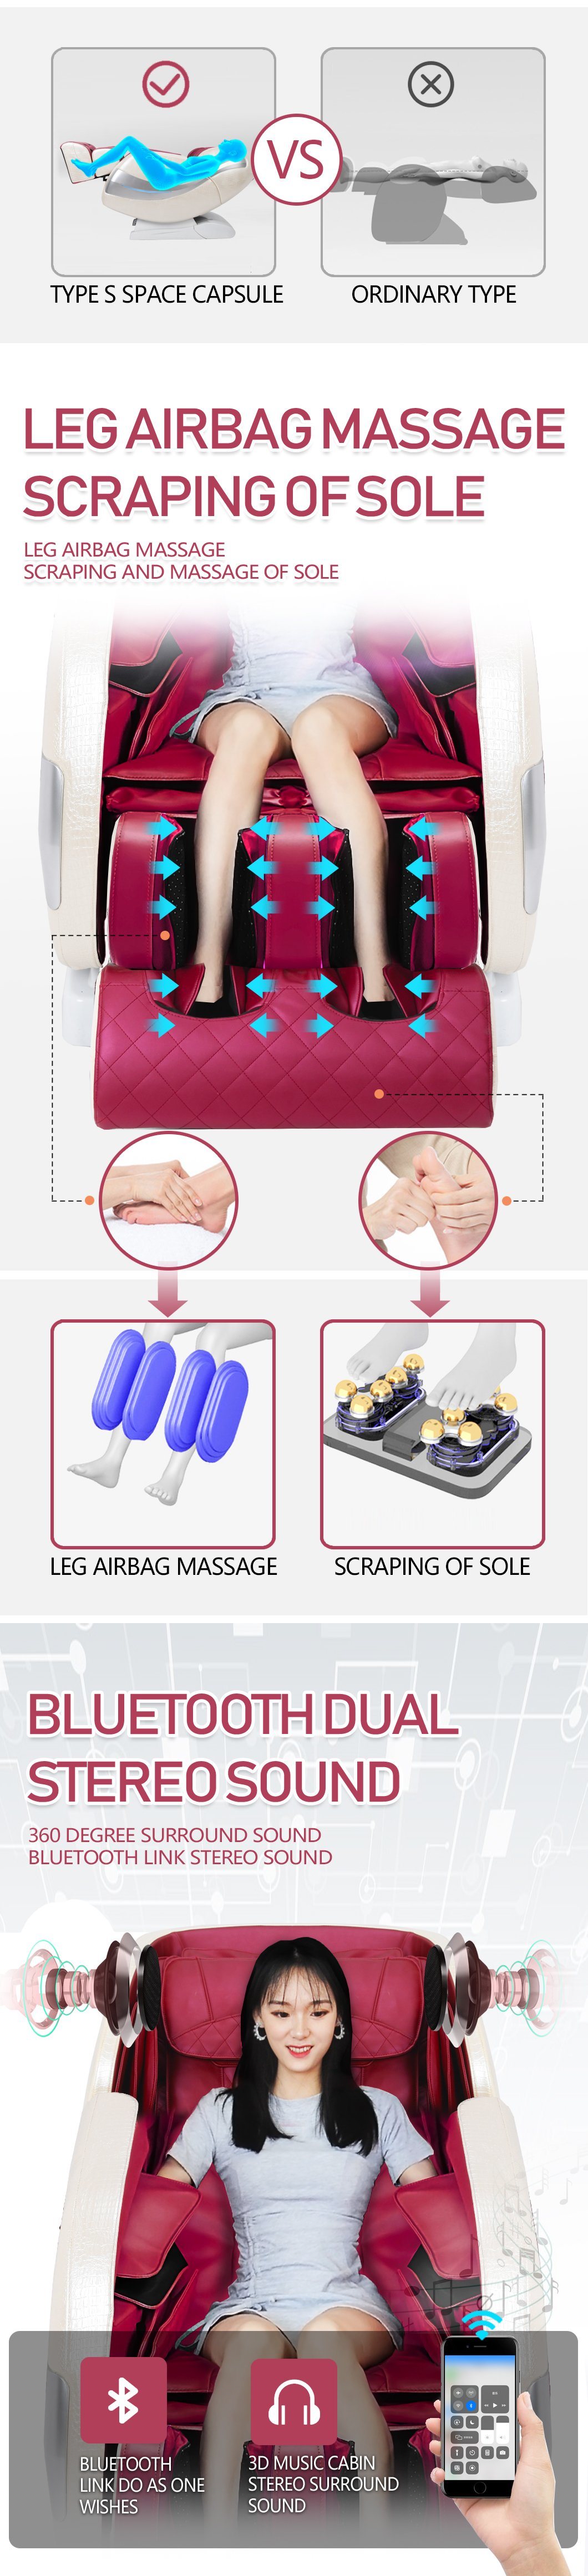 Omeik Most Popular 4D Cheap Full Body Electric Reclining Best Korea Massage Chair